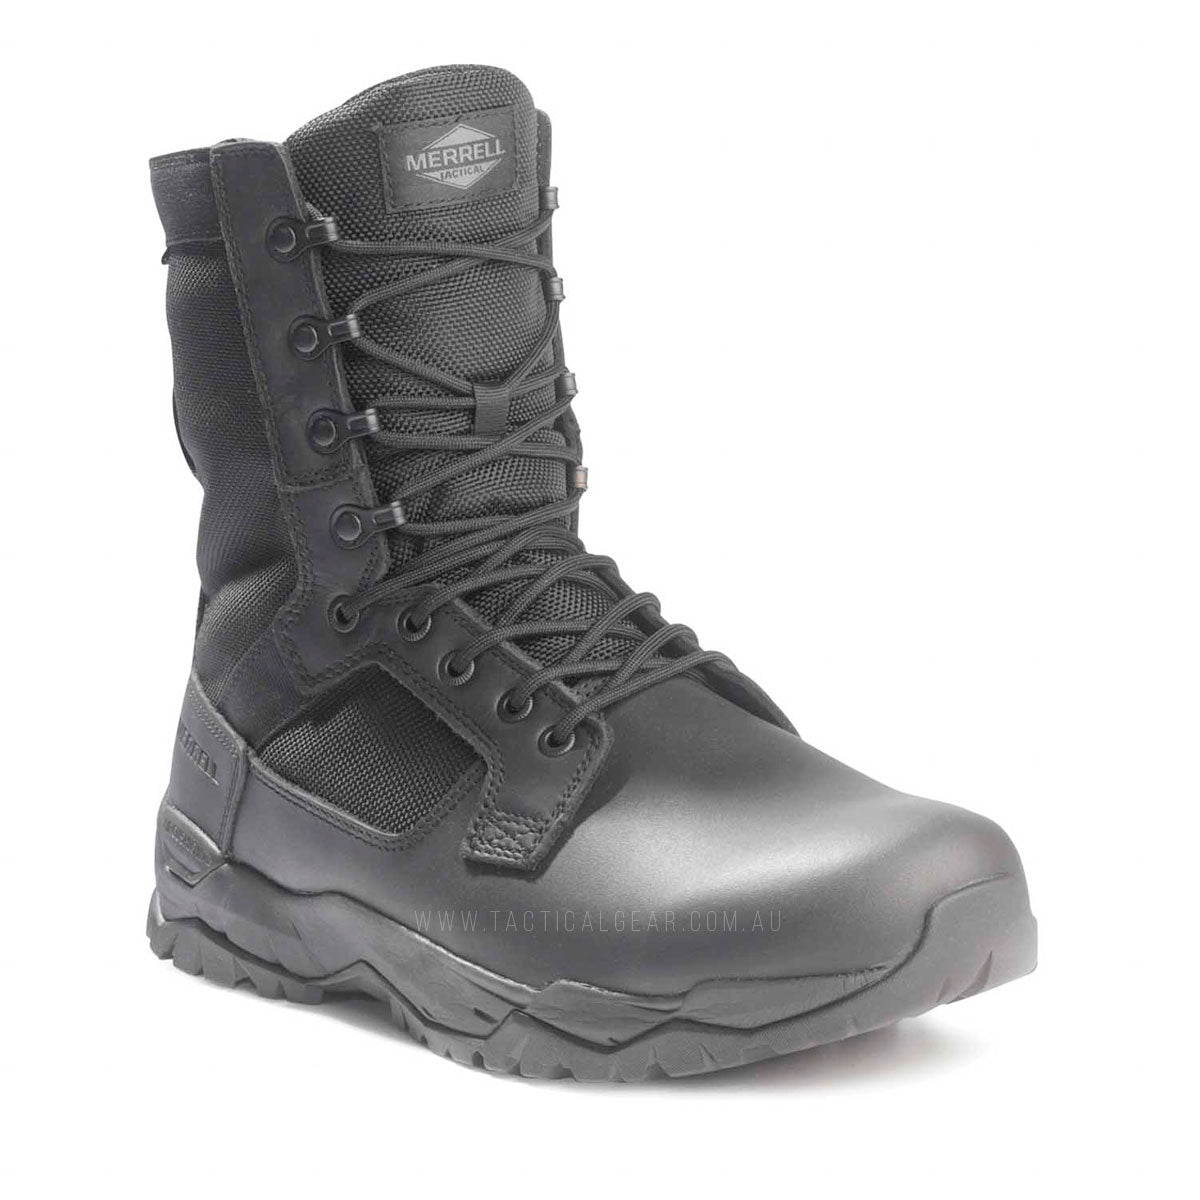 Merrell MQC Patrol Waterproof Tactical Boots Black J099351 Tactical Gear